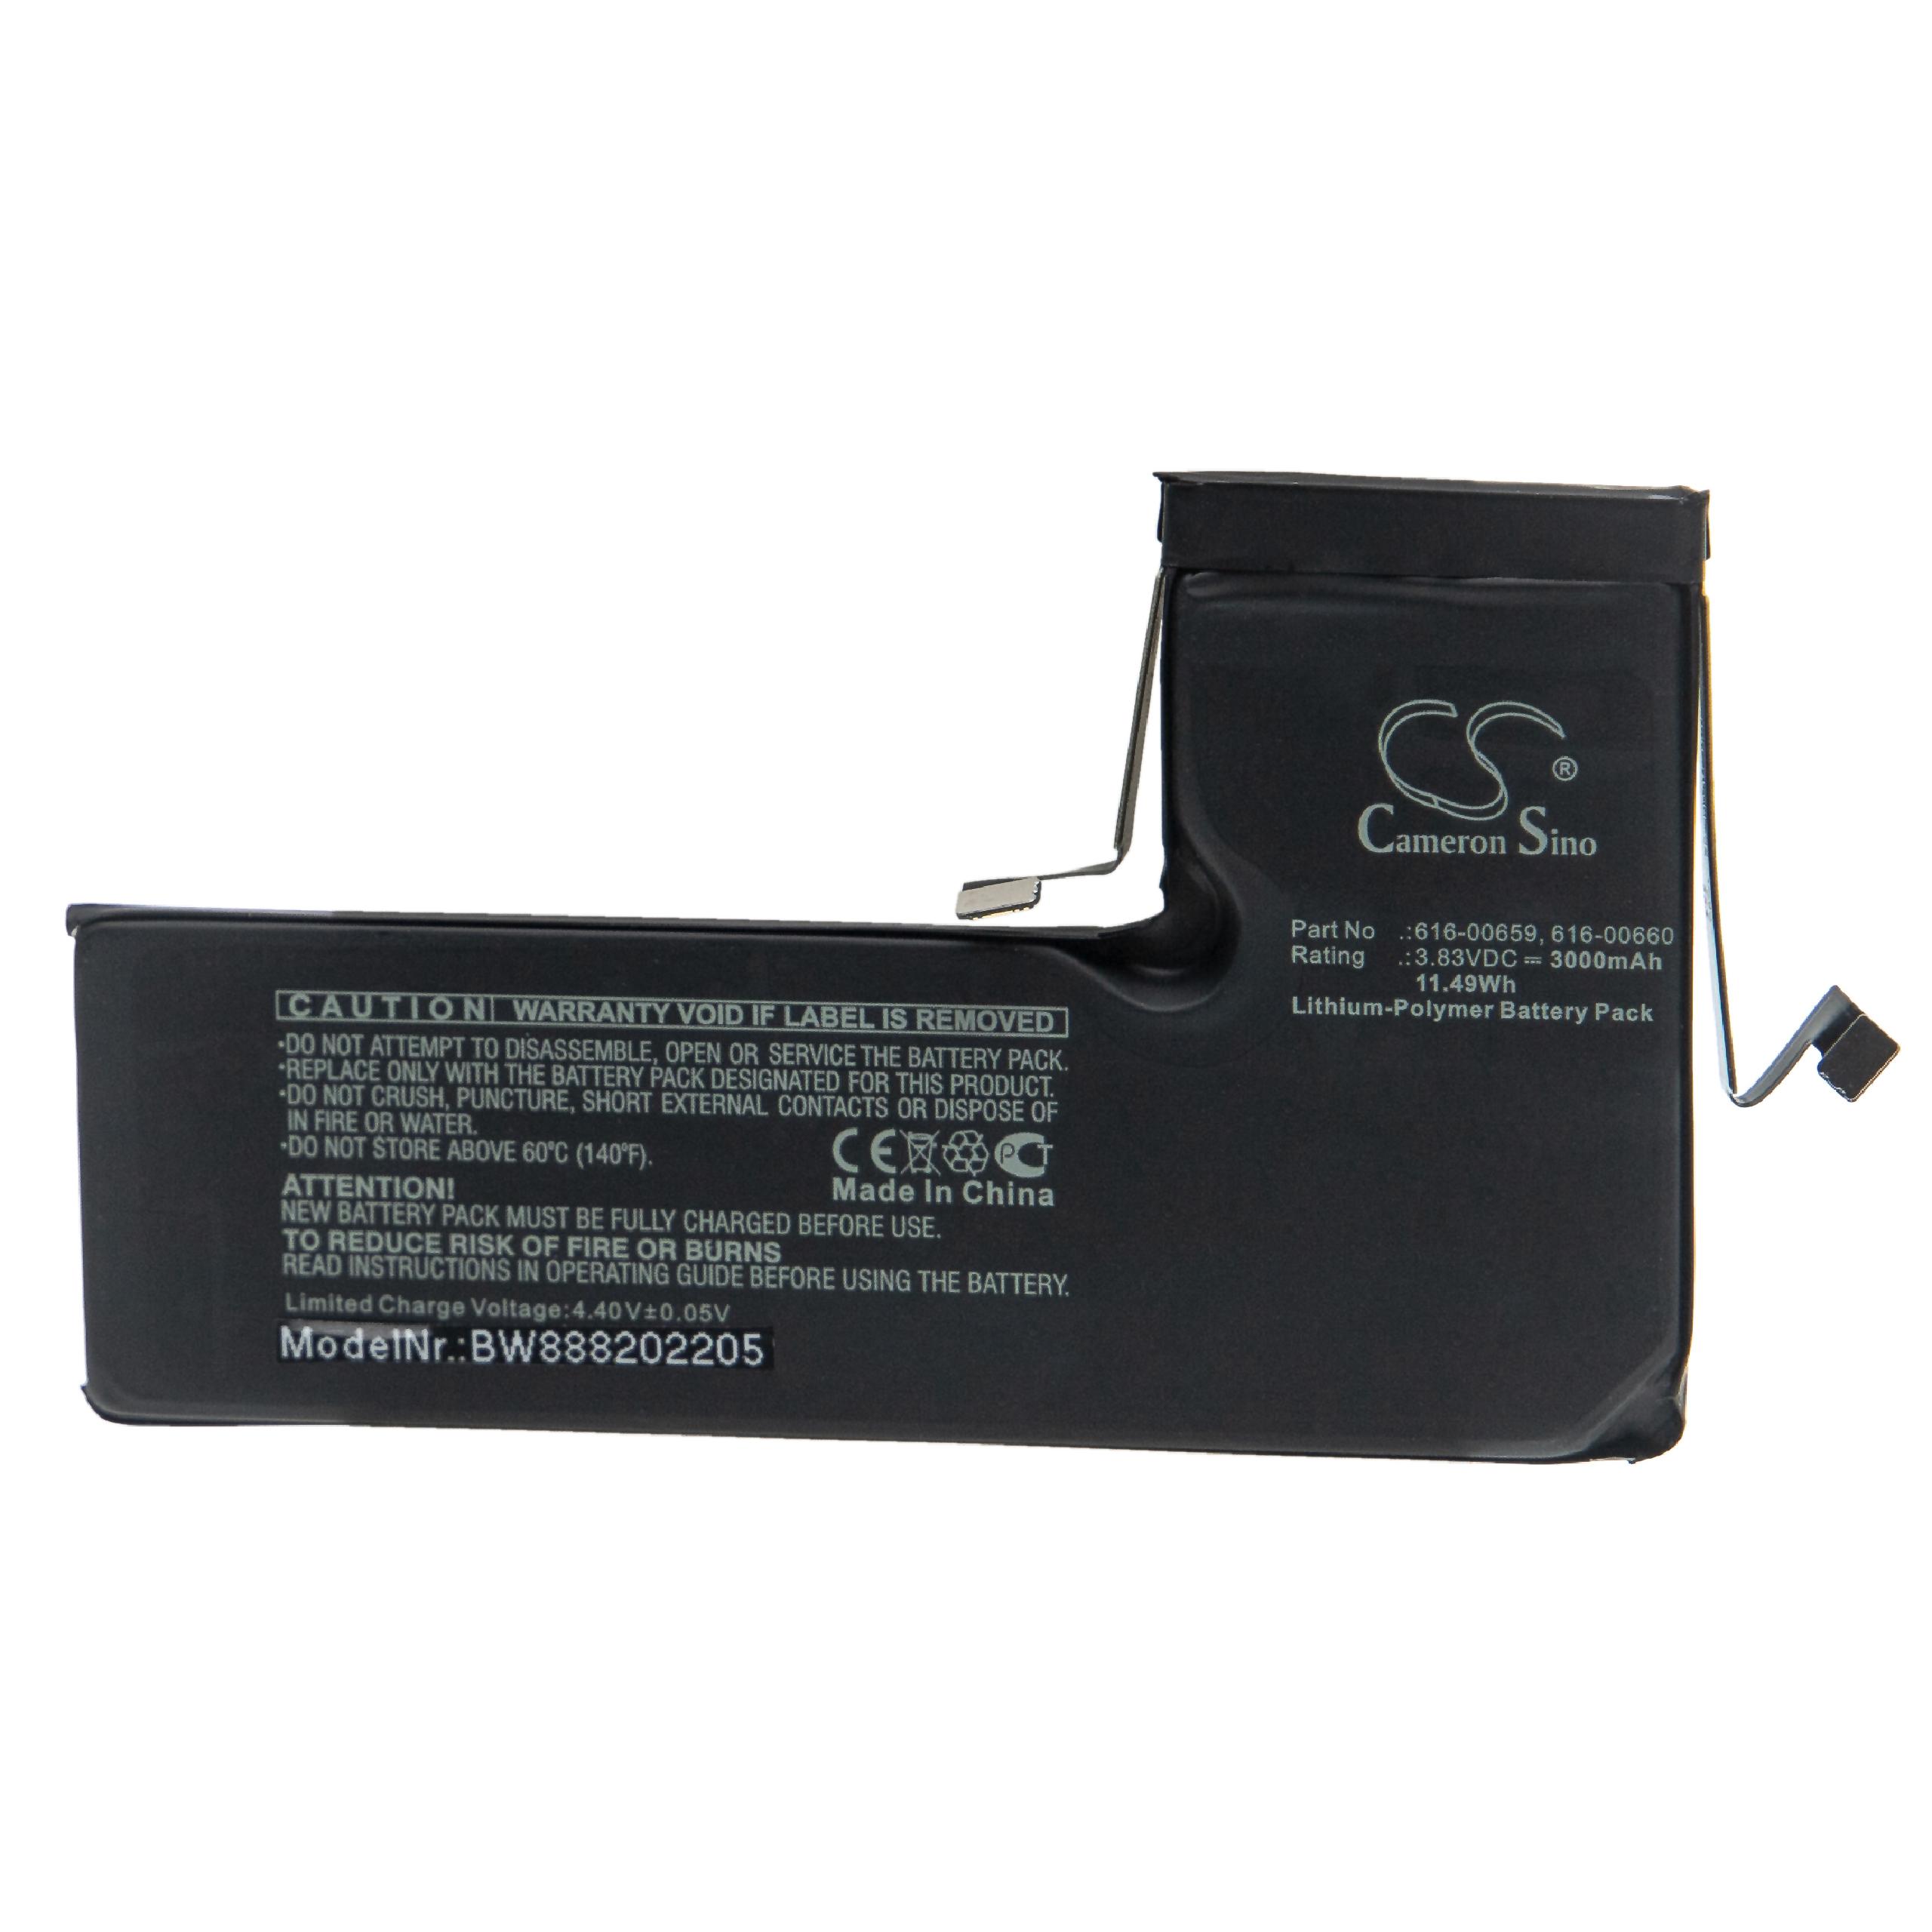 Batterie remplace Apple 616-00659, 616-00660 pour téléphone portable - 3000mAh, 3,83V, Li-polymère